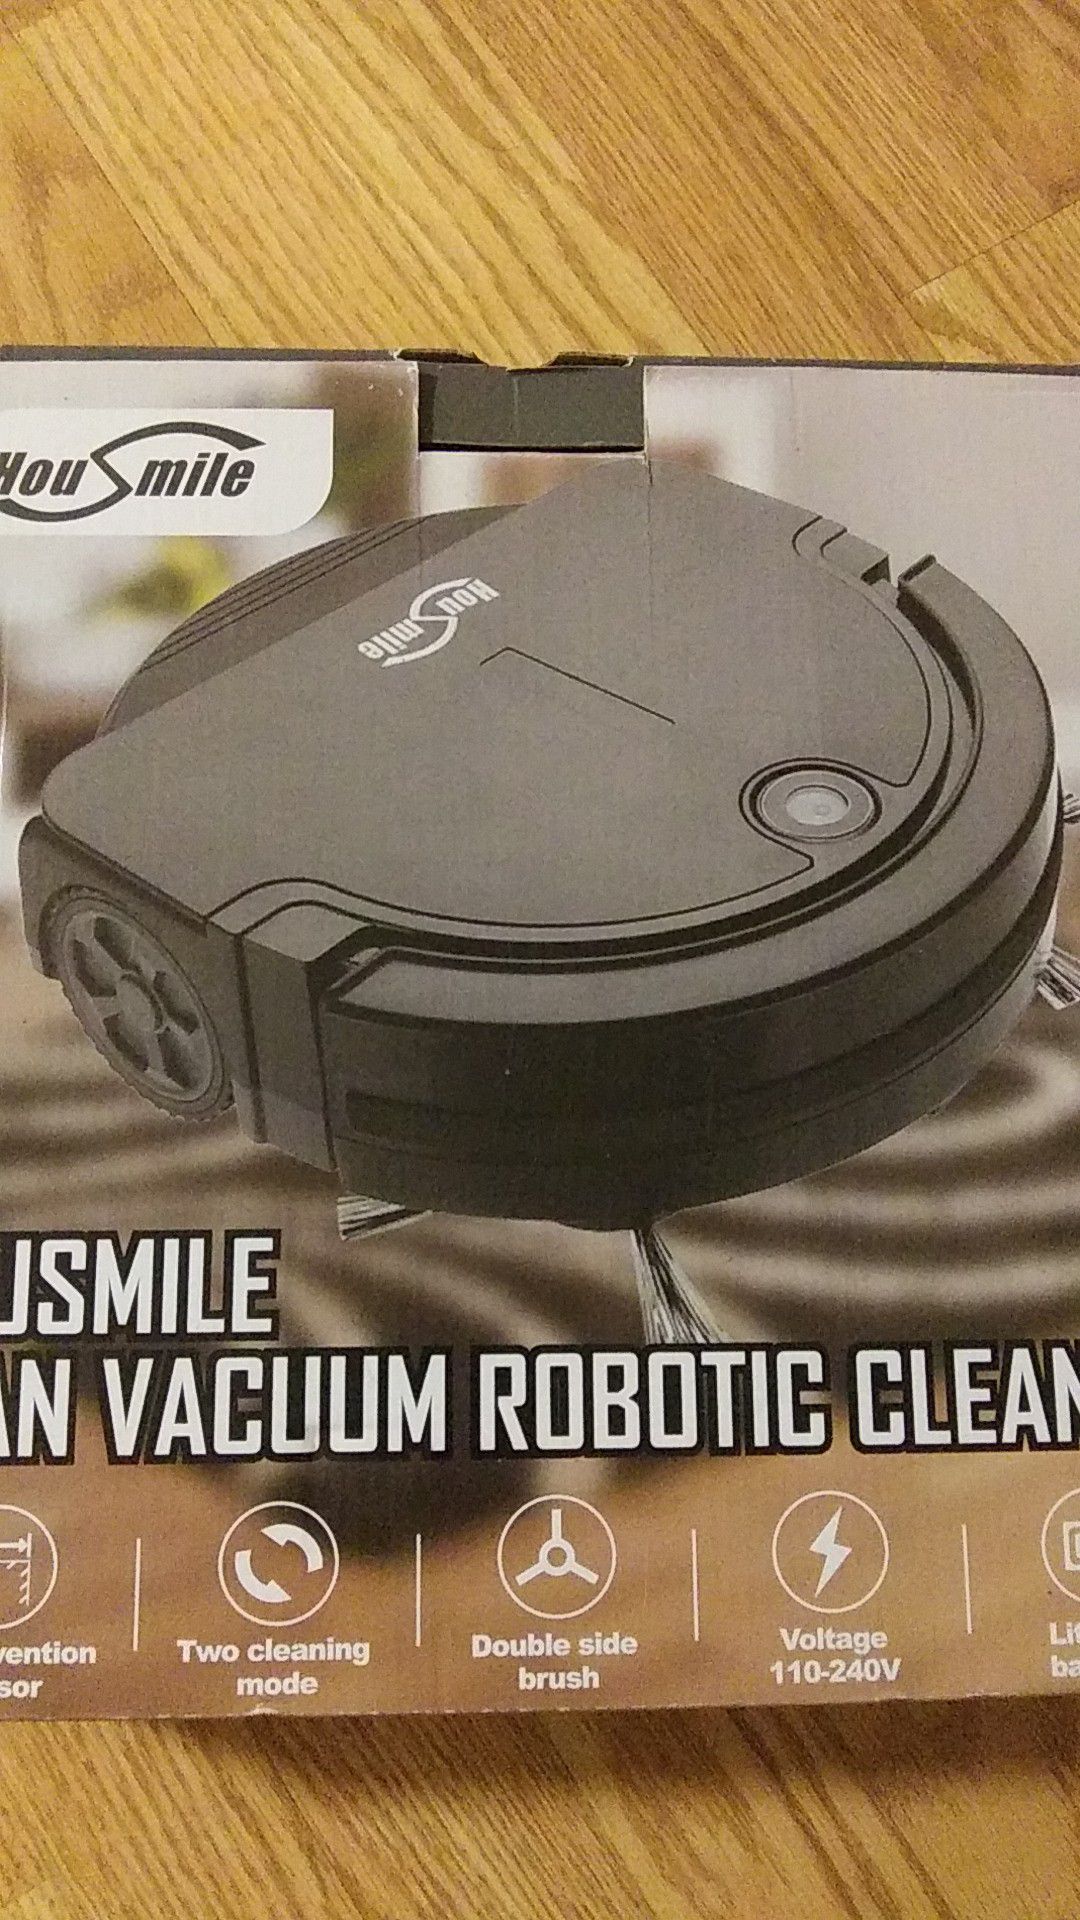 Vacuum Robotic Cleaner